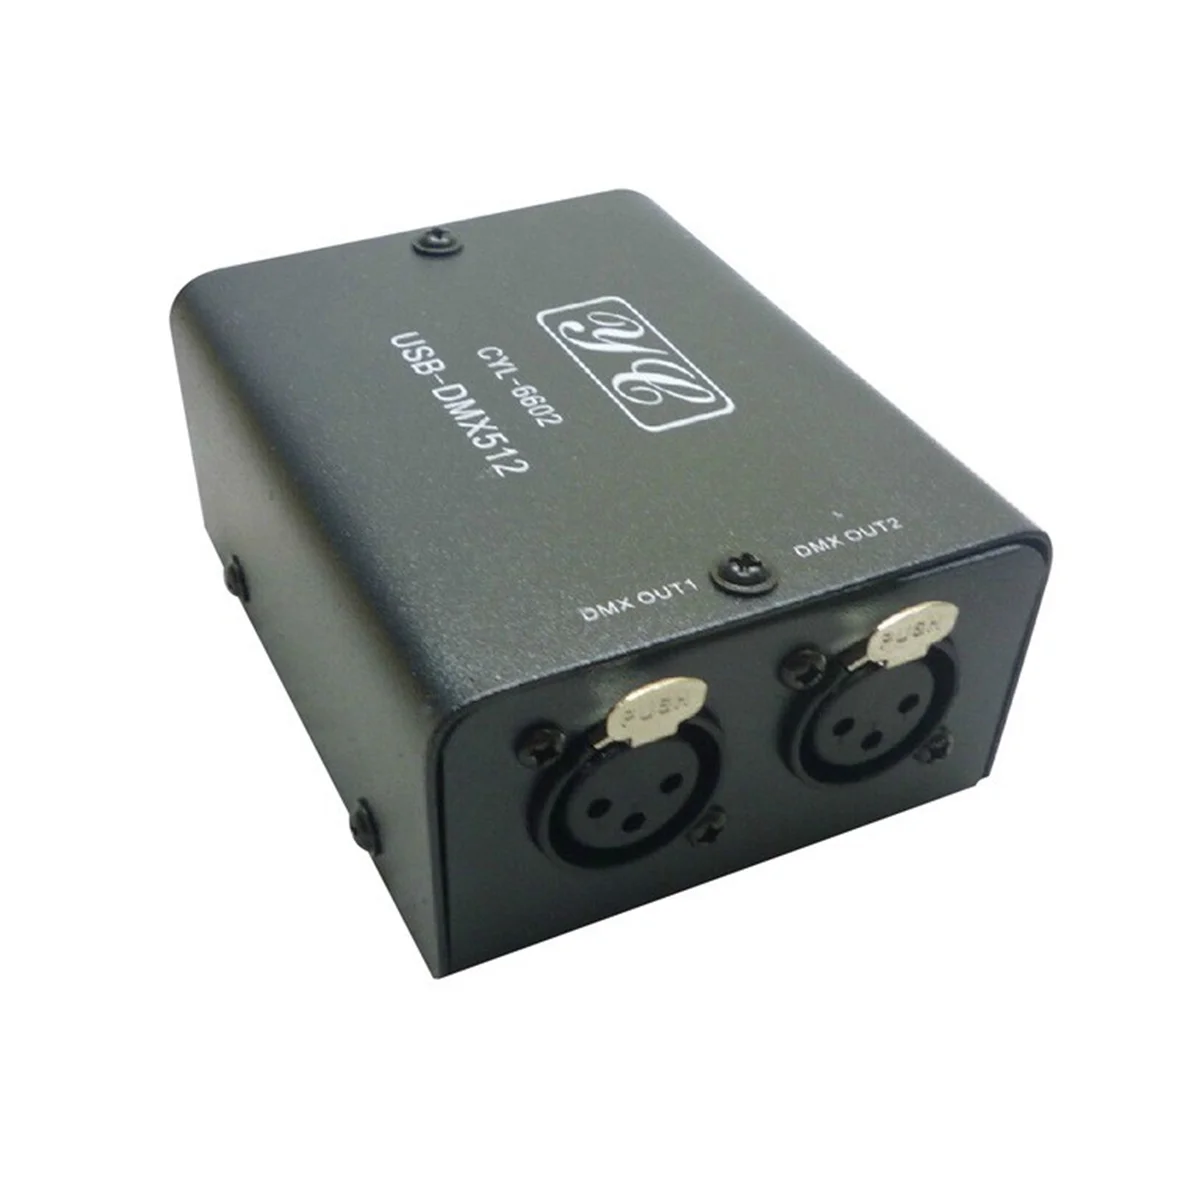 512-channel-usb-to-dmx-dmx512-led-lights-dmx-stage-lighting-controller-lighting-controller-mini-decoder